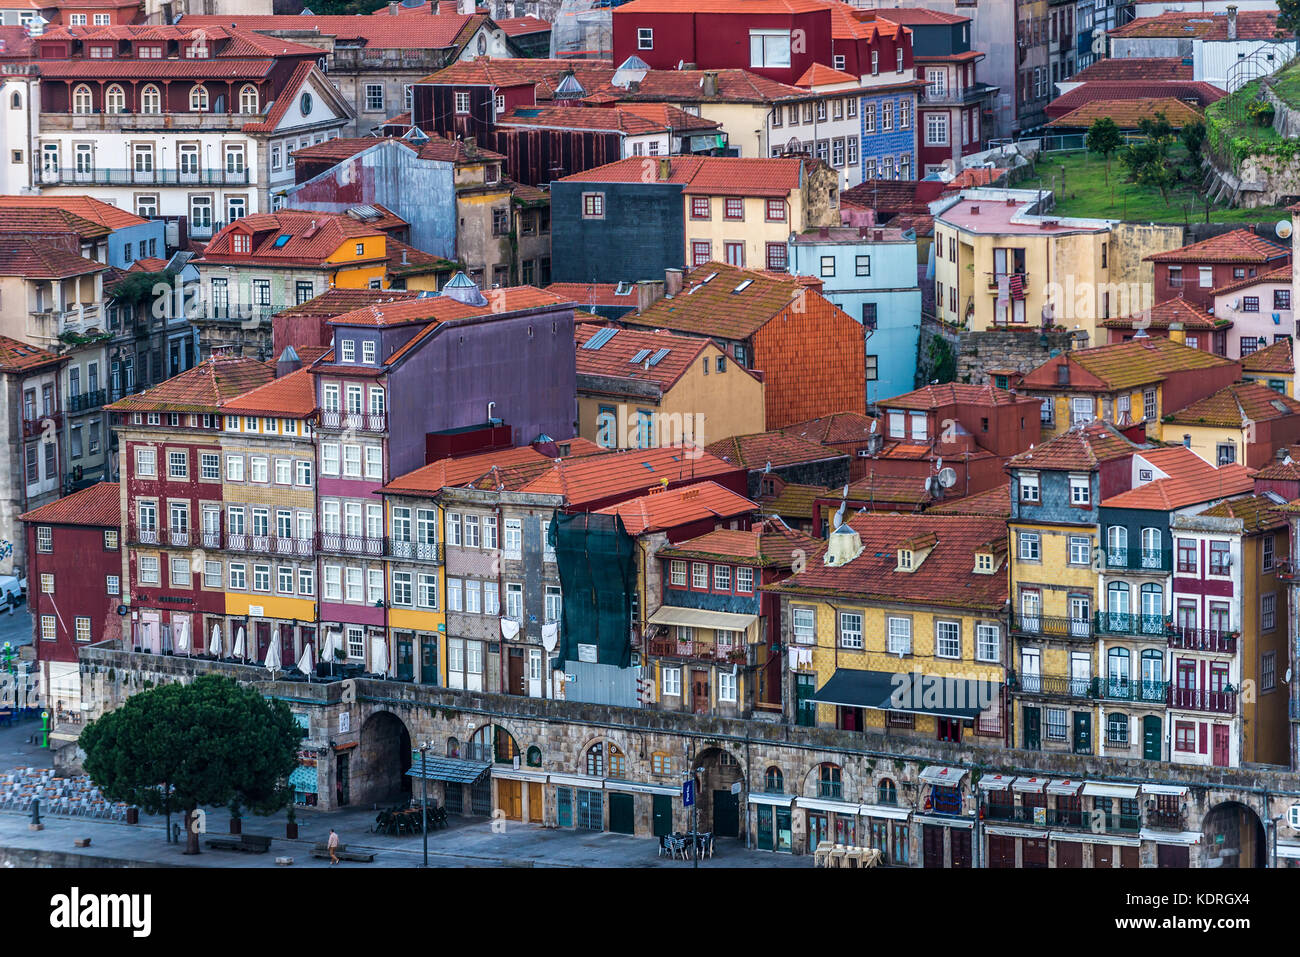 Case del quartiere Ribeira nella città di Porto sulla penisola iberica, seconda città più grande del Portogallo Foto Stock